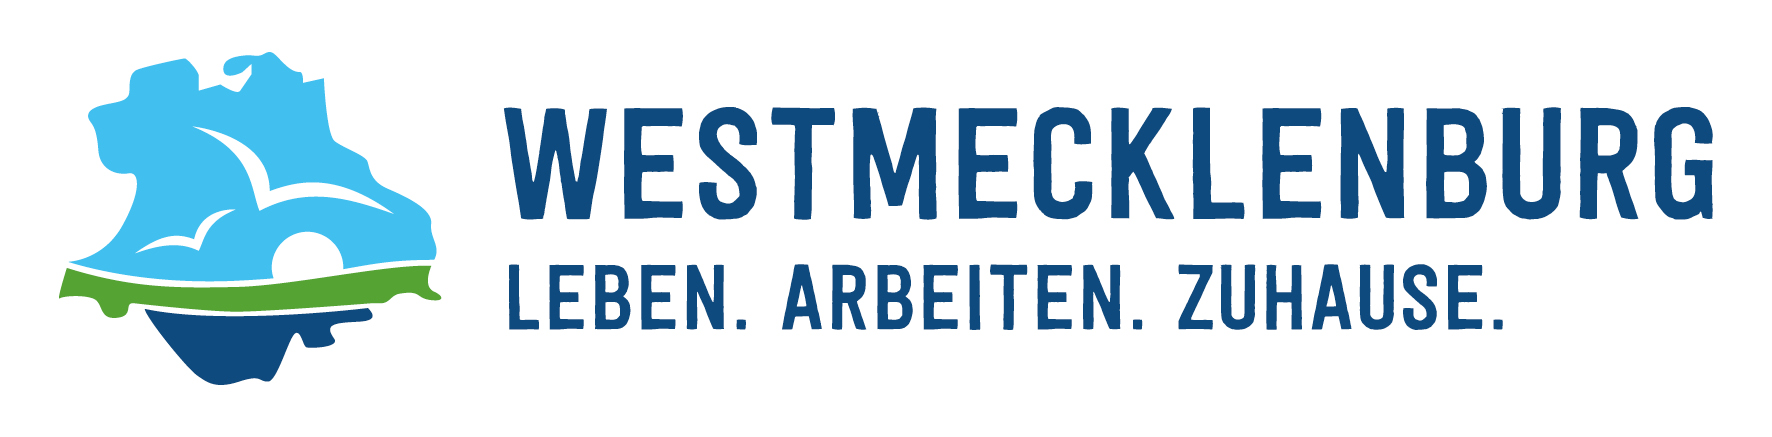 Das ist das Logo des Regionalmarketing Mecklenburg-Schwerin e.V.